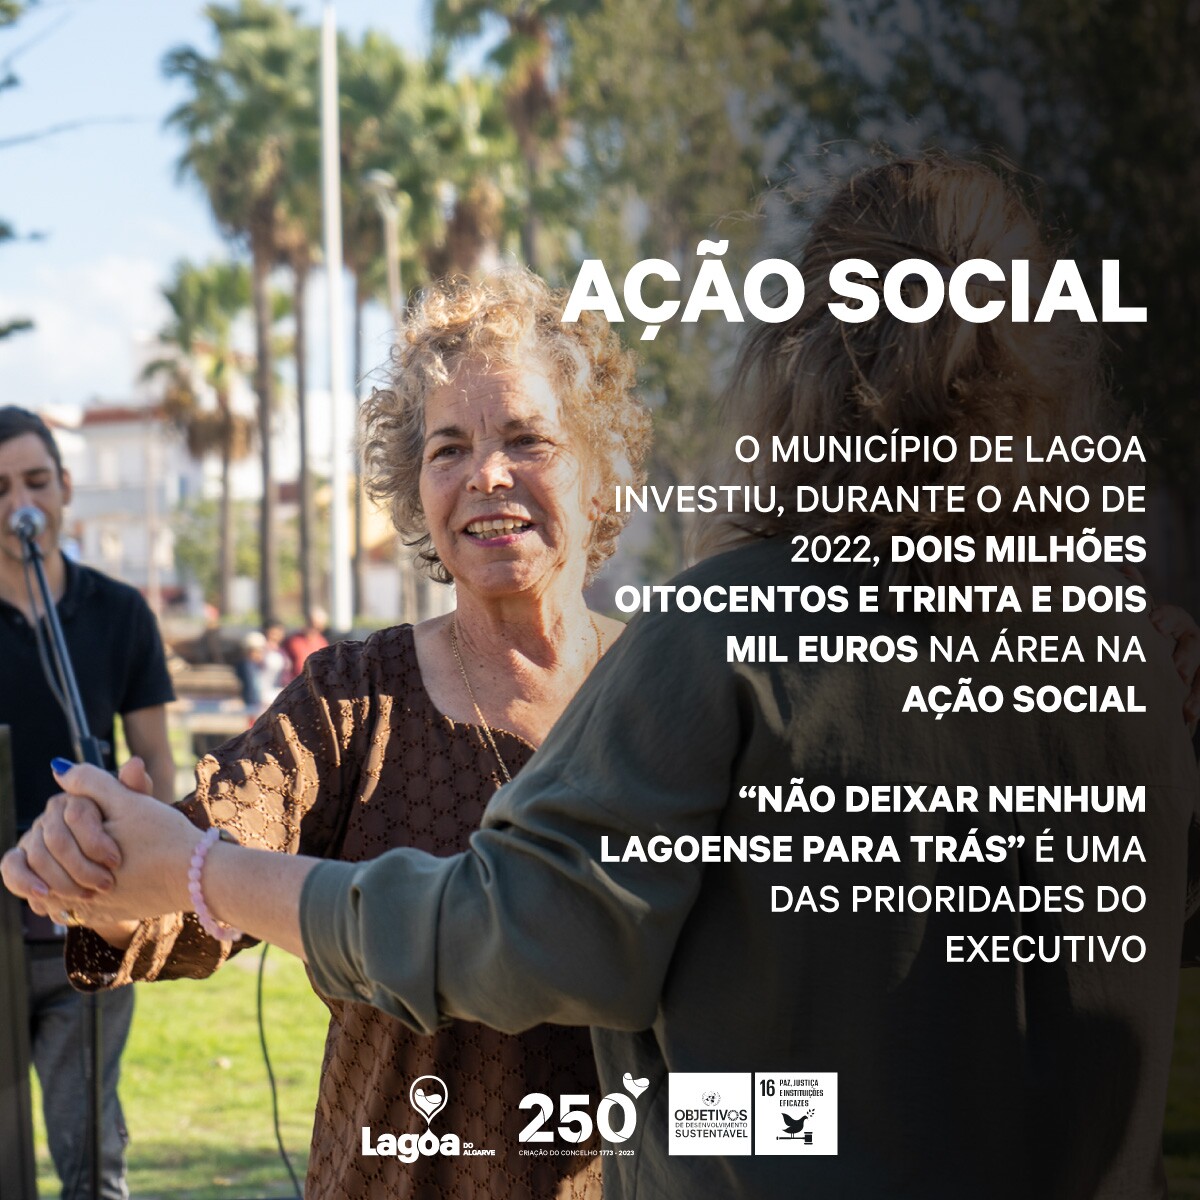 Lagoa investe perto de 3 milhões na Ação Social em 2022